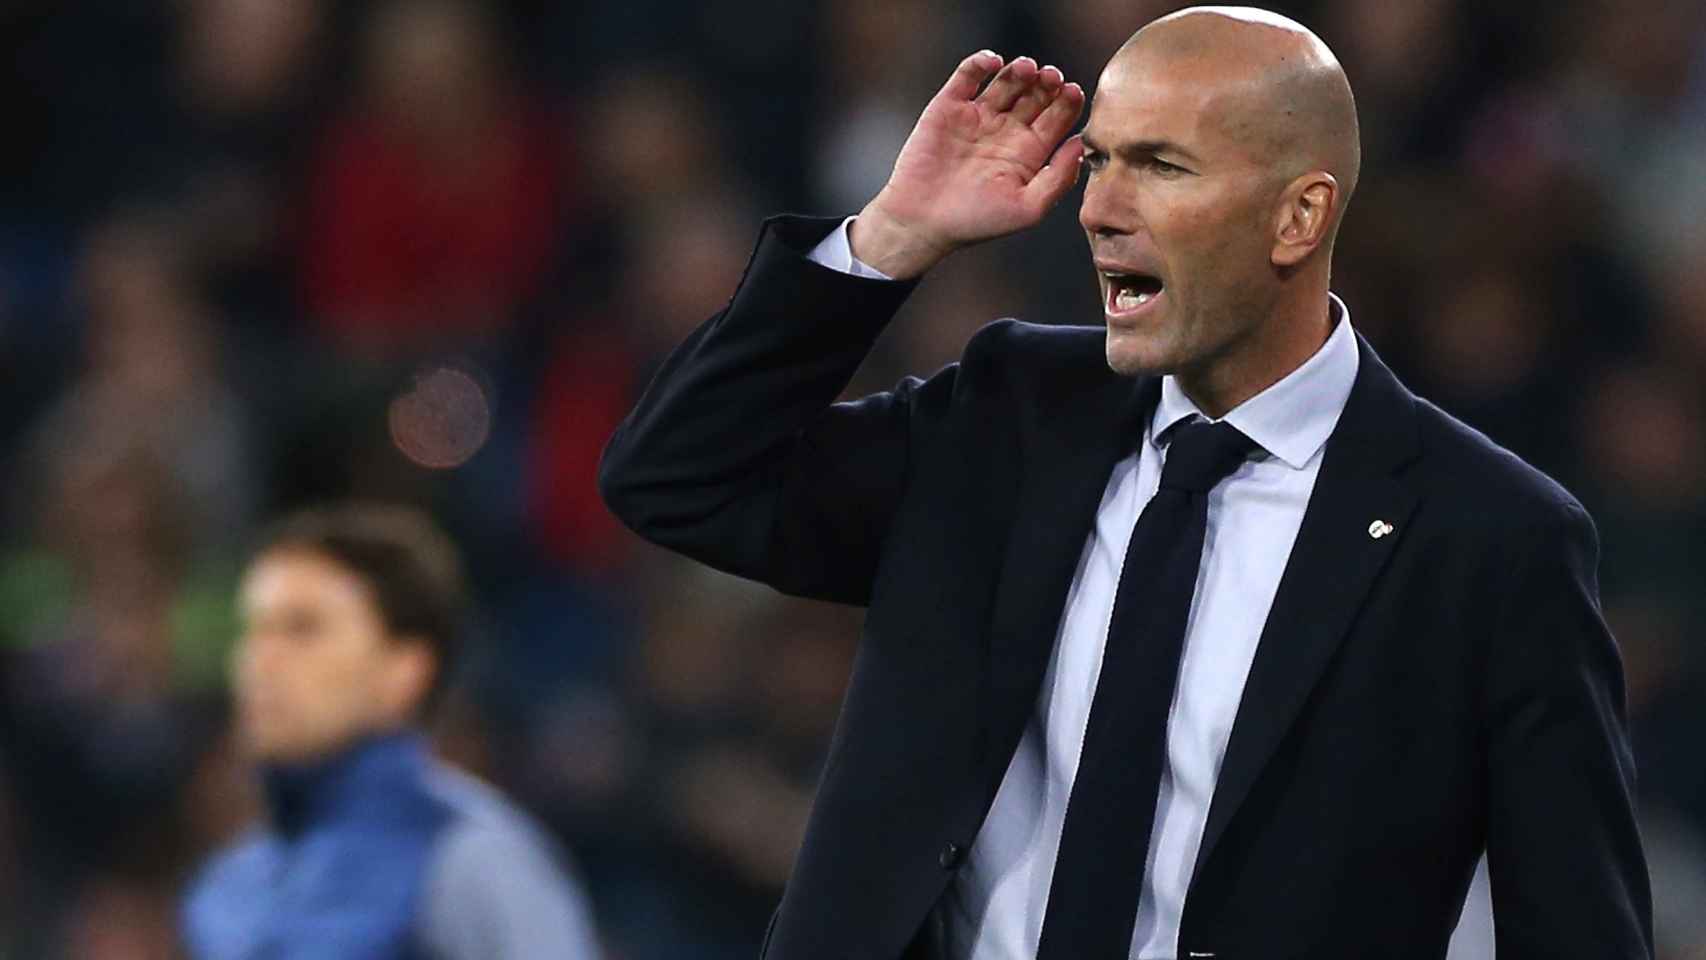 Zidane en el partido del Real Madrid contra el Real Betis / EFE